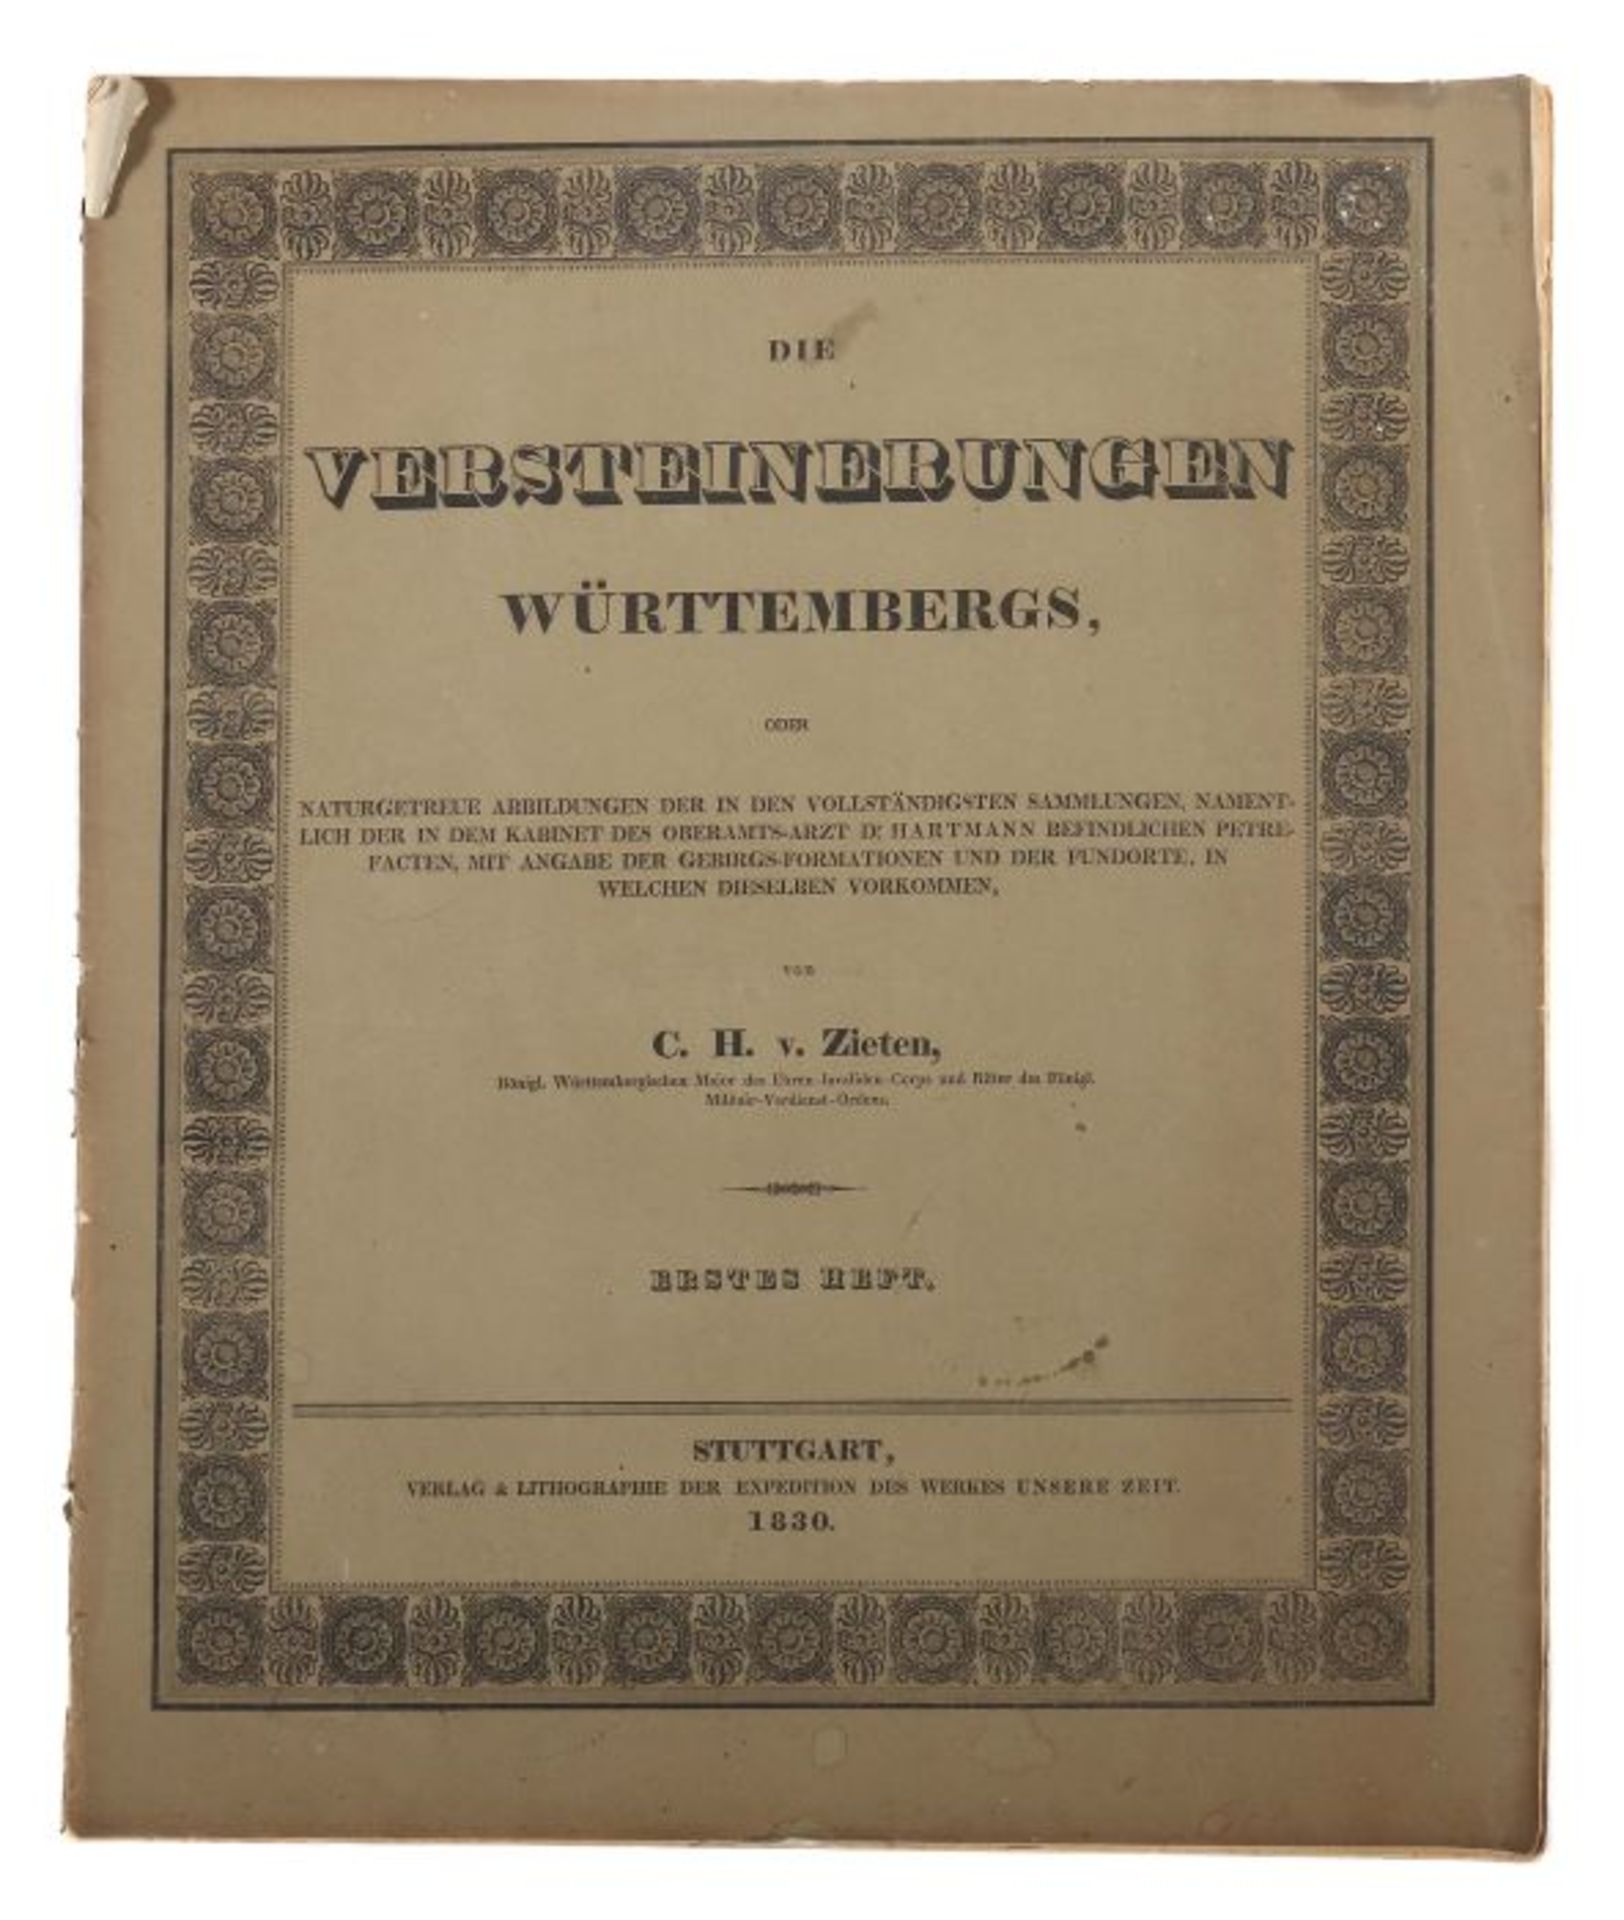 Zieten, C. H. vonDie Versteinerungen Württembergs, oder naturgetreue Abbildungen der in den